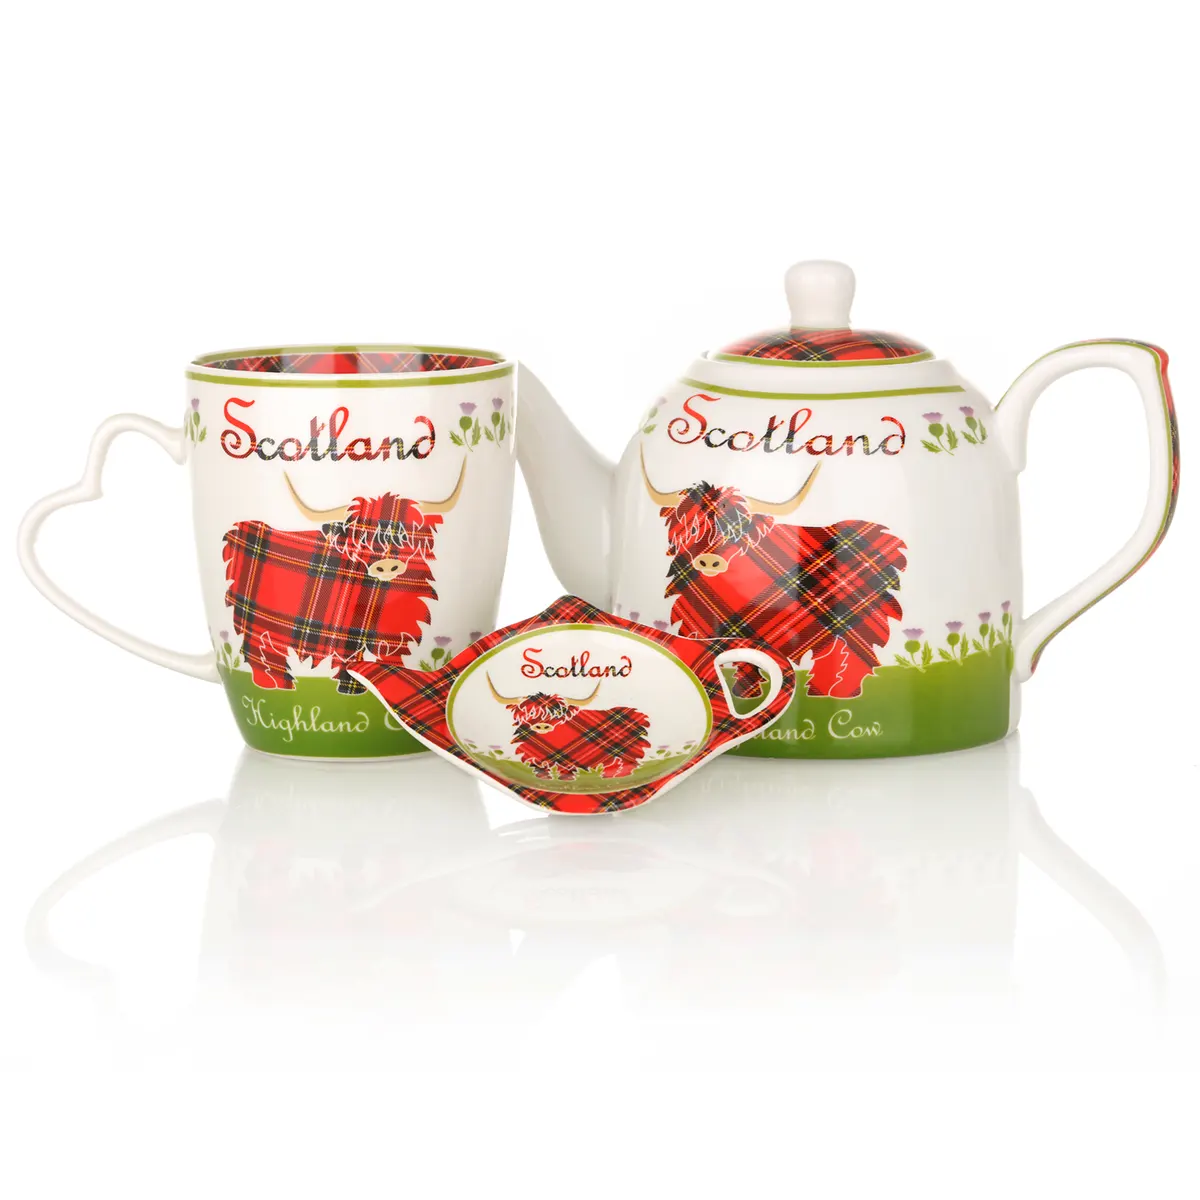 Highland Cow Teekanne aus Keramik mit schottischem Rind & Tartan-Muster